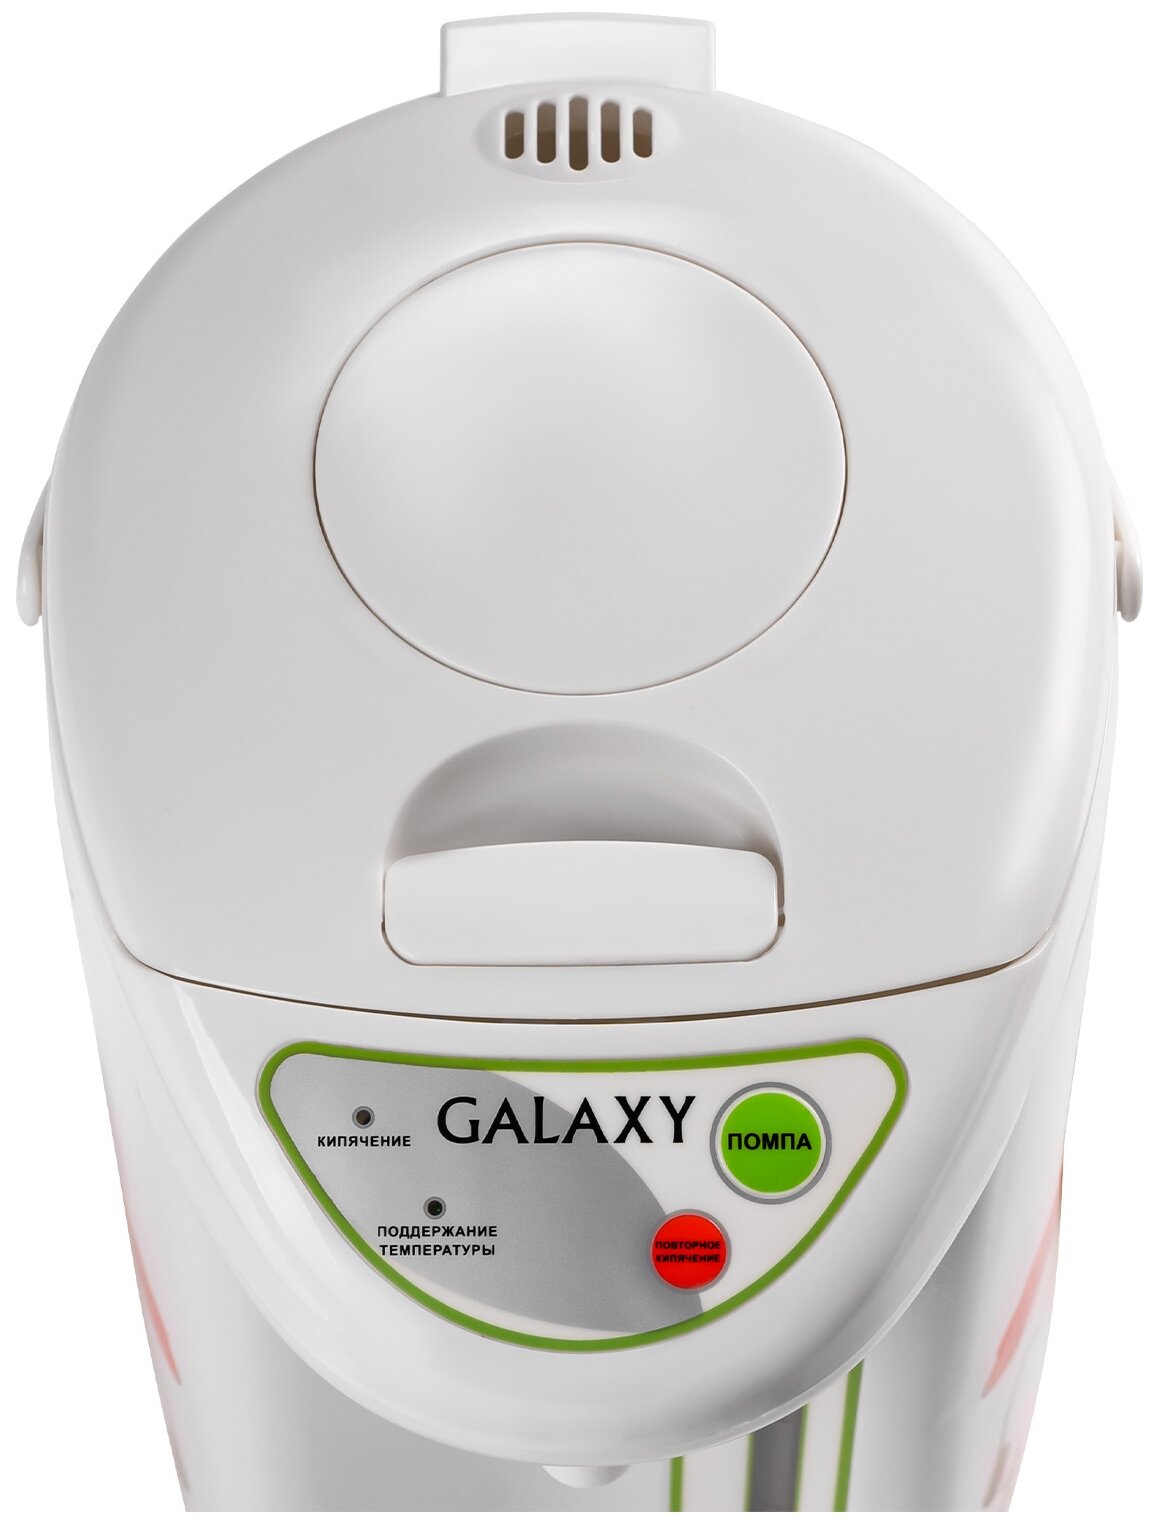 Термопот Galaxy GL-0606 900ВТ, объем 5литров, 3 способа подачи воды